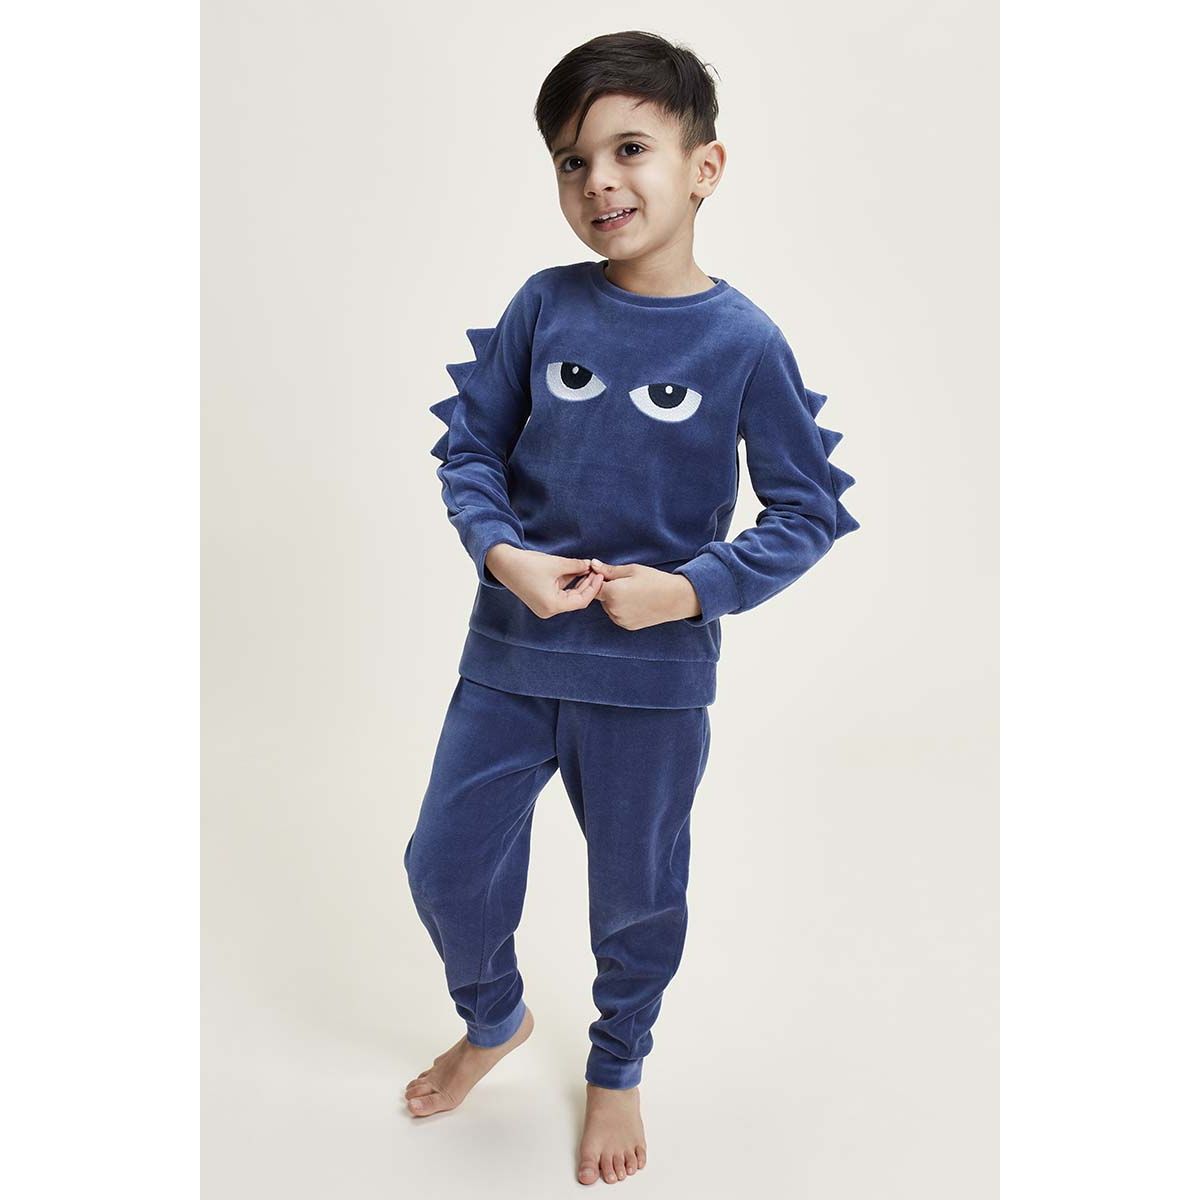 levenslang Meenemen merk Velours jongens pyjama draak | Gratis verzending en retour | Online de  mooiste pyjama's, nachthemden, ondermode en meer